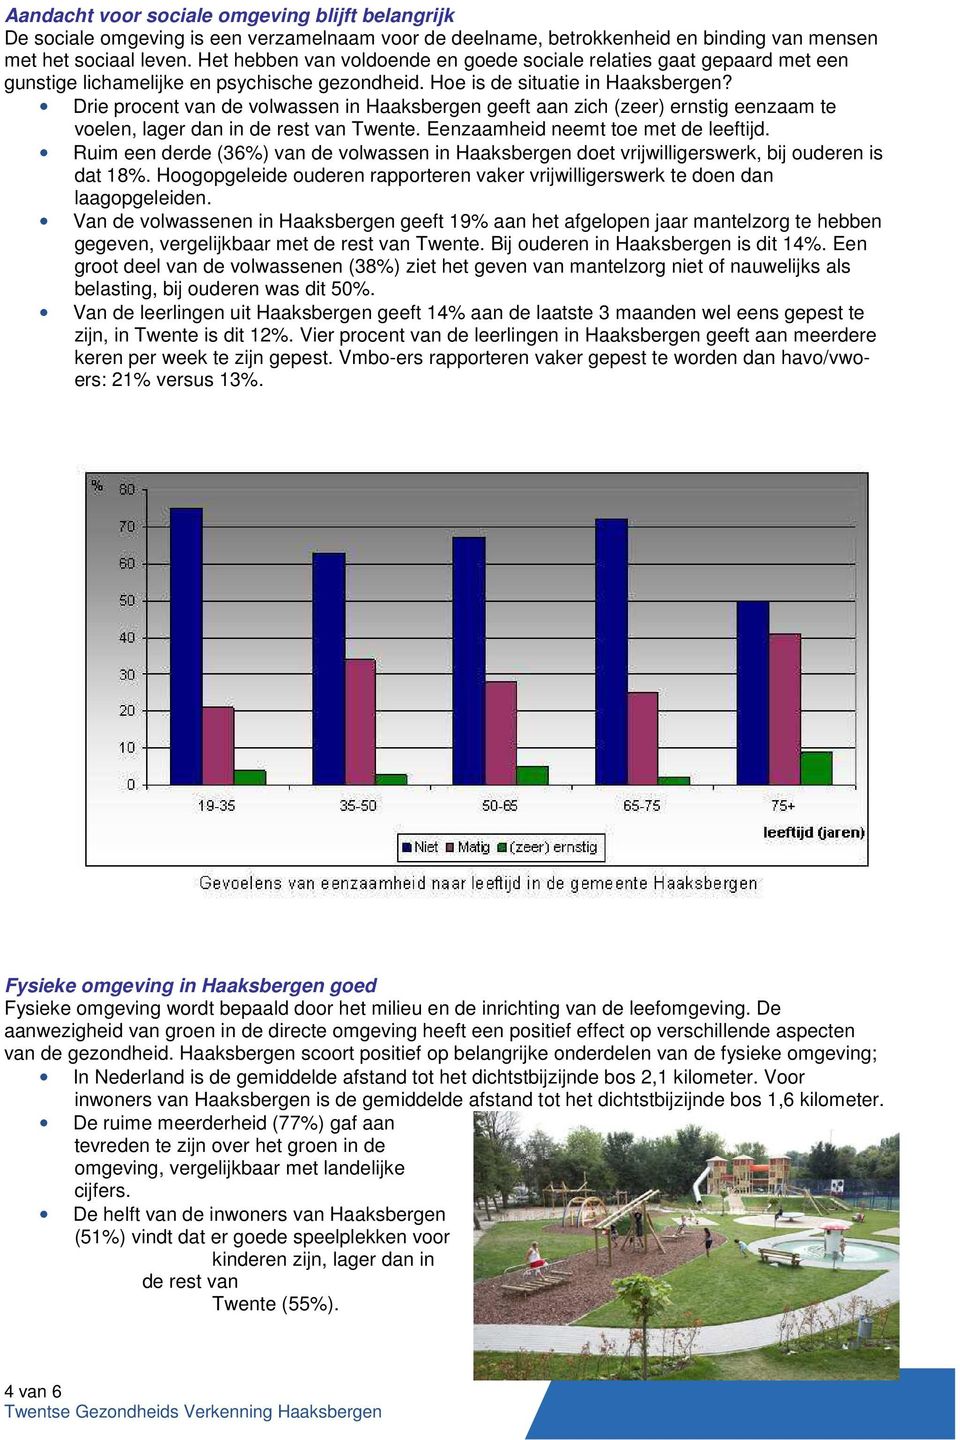 Drie procent van de volwassen in Haaksbergen geeft aan zich (zeer) ernstig eenzaam te voelen, lager dan in de rest van Twente. Eenzaamheid neemt toe met de leeftijd.